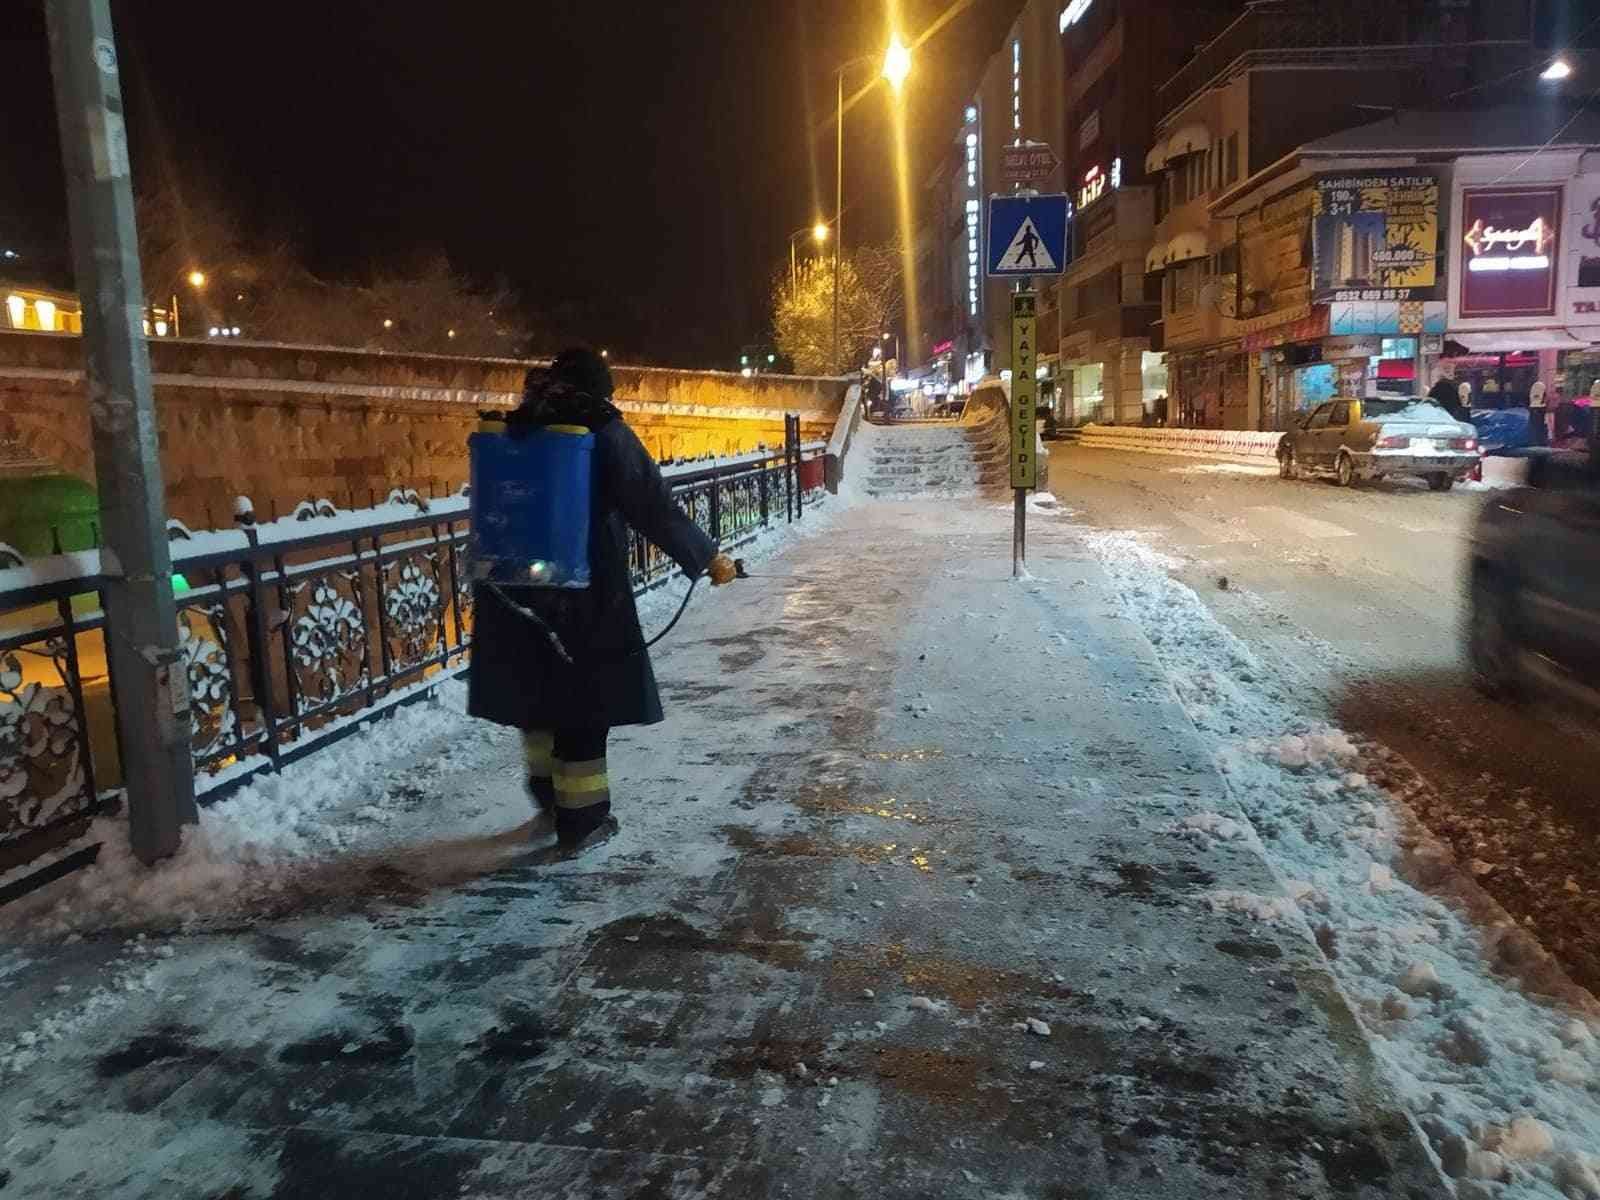 Kastamonu Belediyesi karla mücadele kapasitesini arttırdı #kastamonu